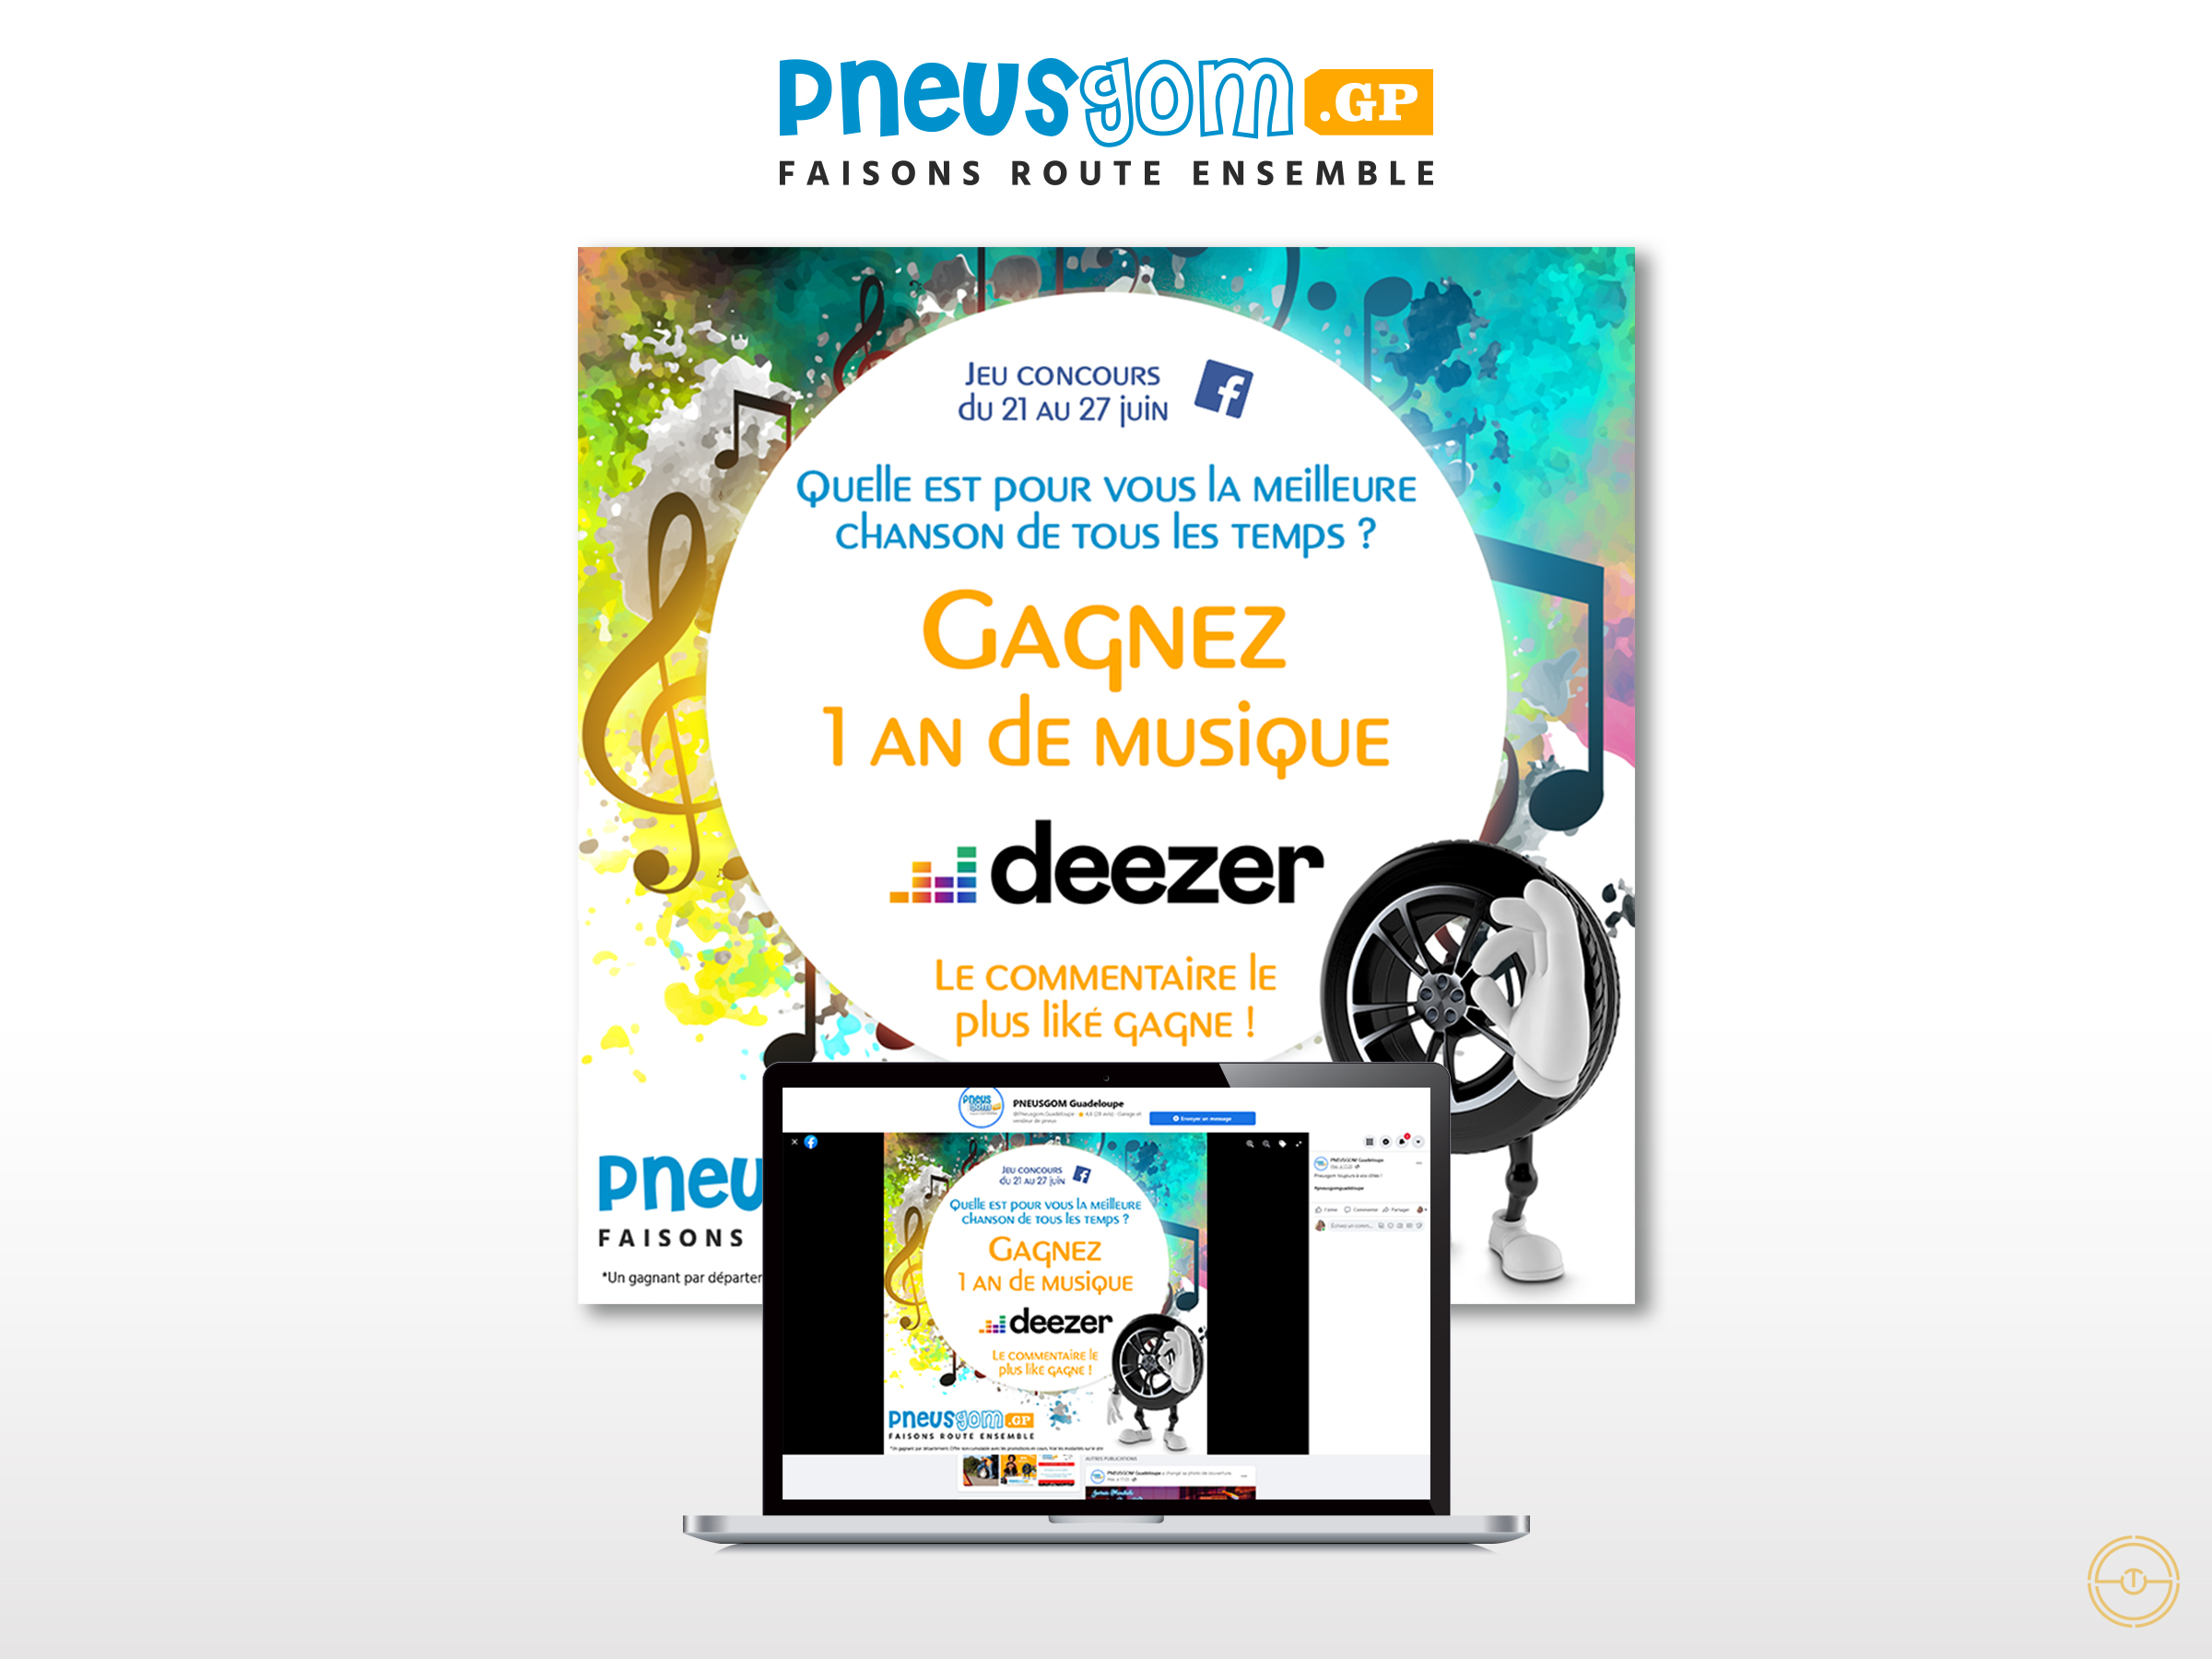 Visuel de digital marketing pour Pneusgom à l'occasion de la fête de la musique